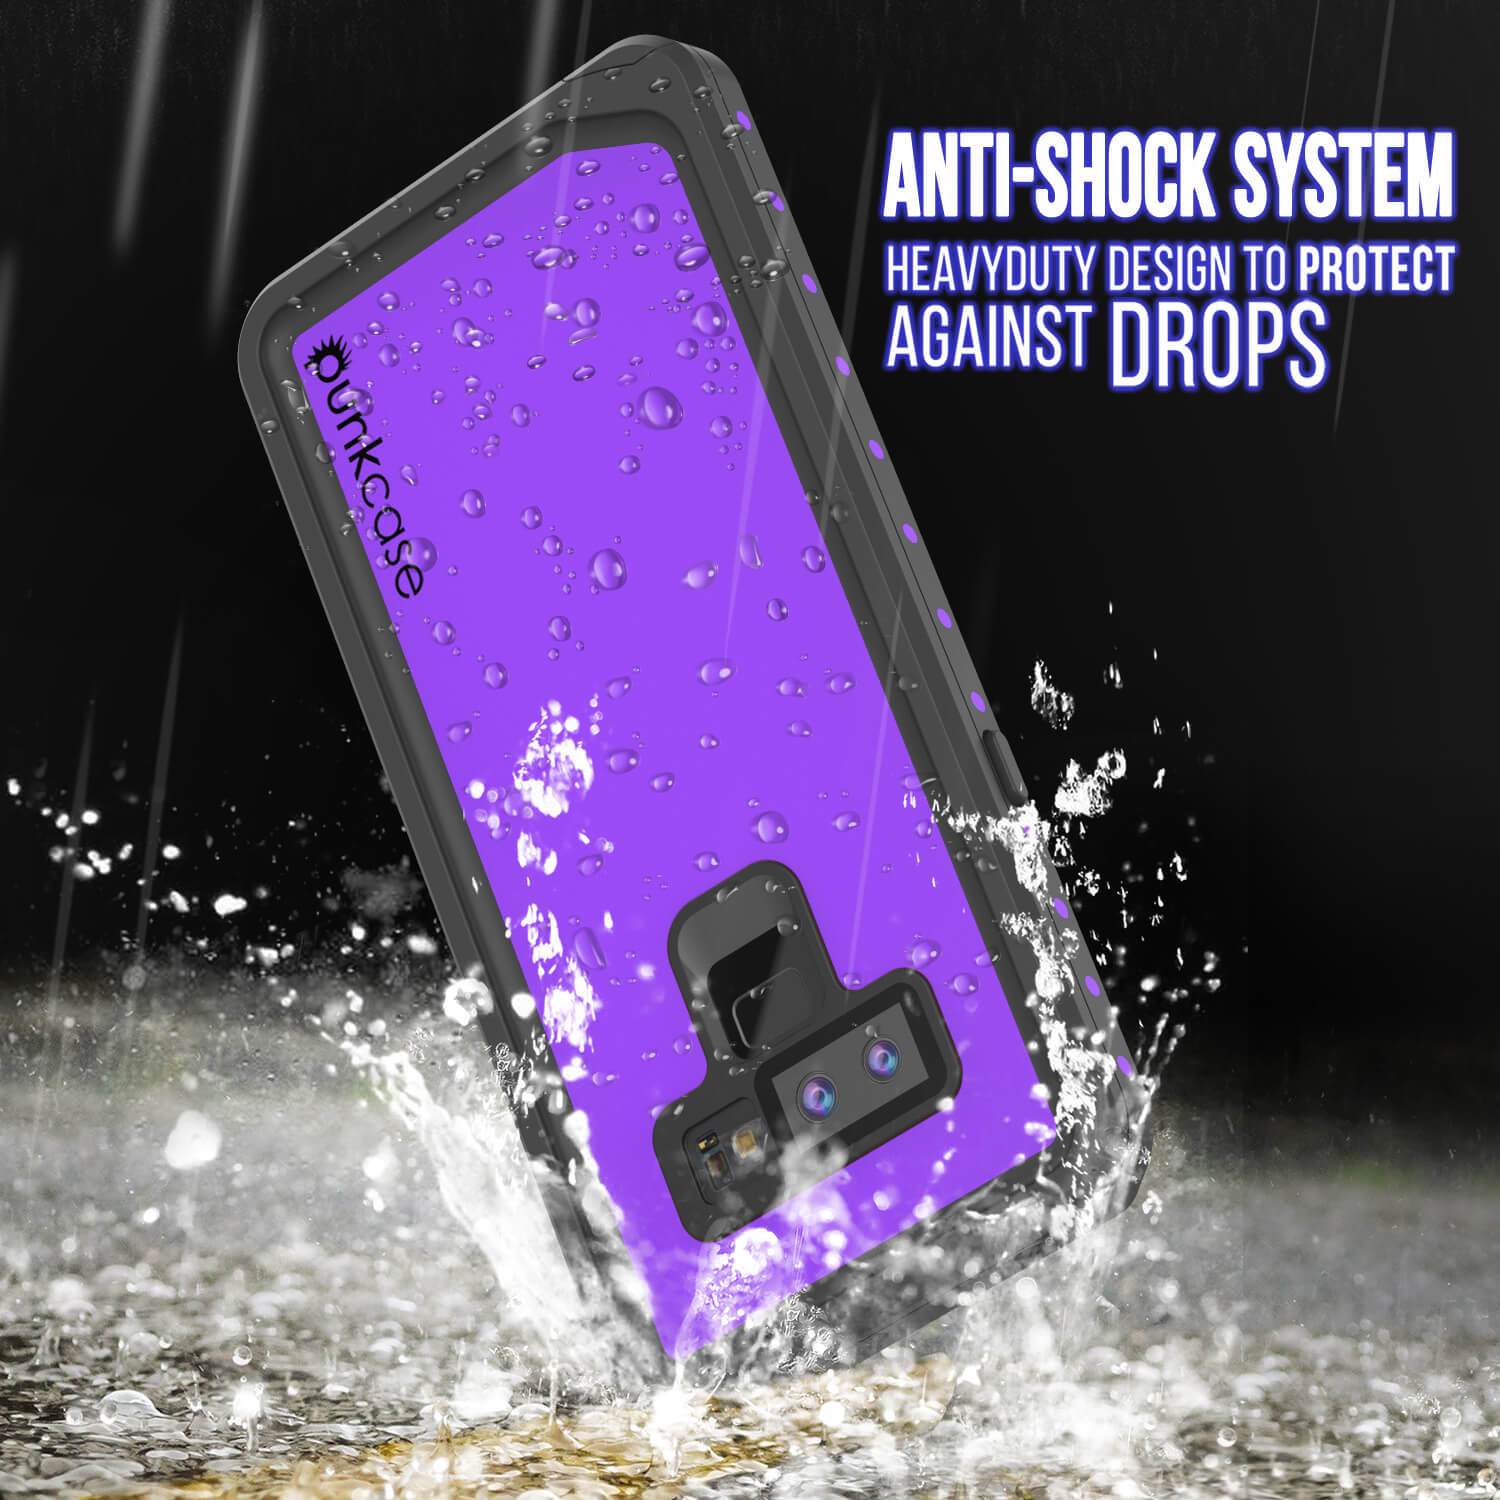 Galaxy Note 9 Waterproof Case PunkCase StudStar Purple